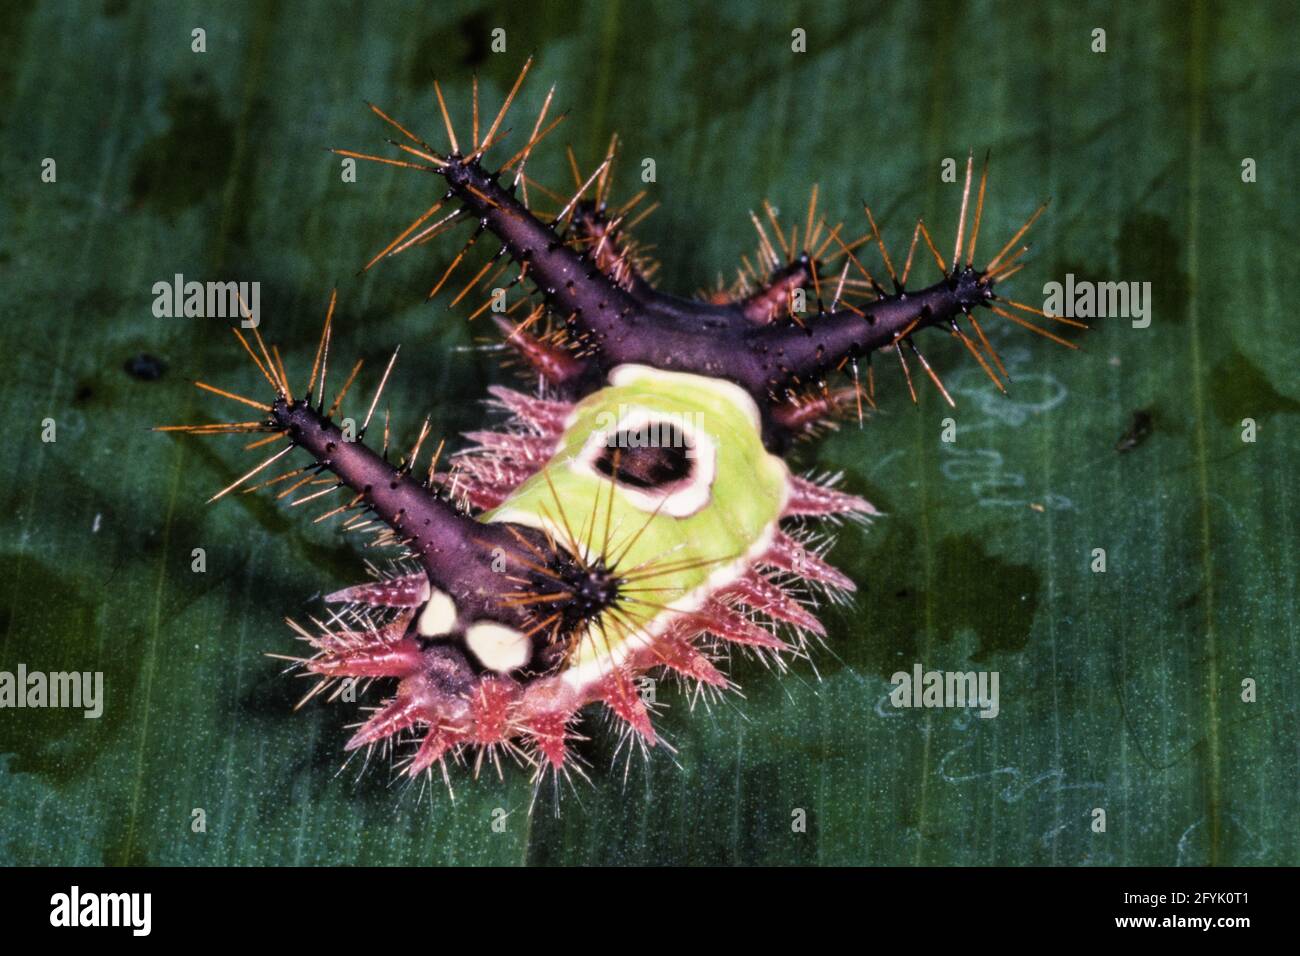 Die Raupen der Saddleback Caterpillar Moth sind giftig mit urtikierenden Dornen, die einen sehr schmerzhaften Stich verursachen. Stockfoto